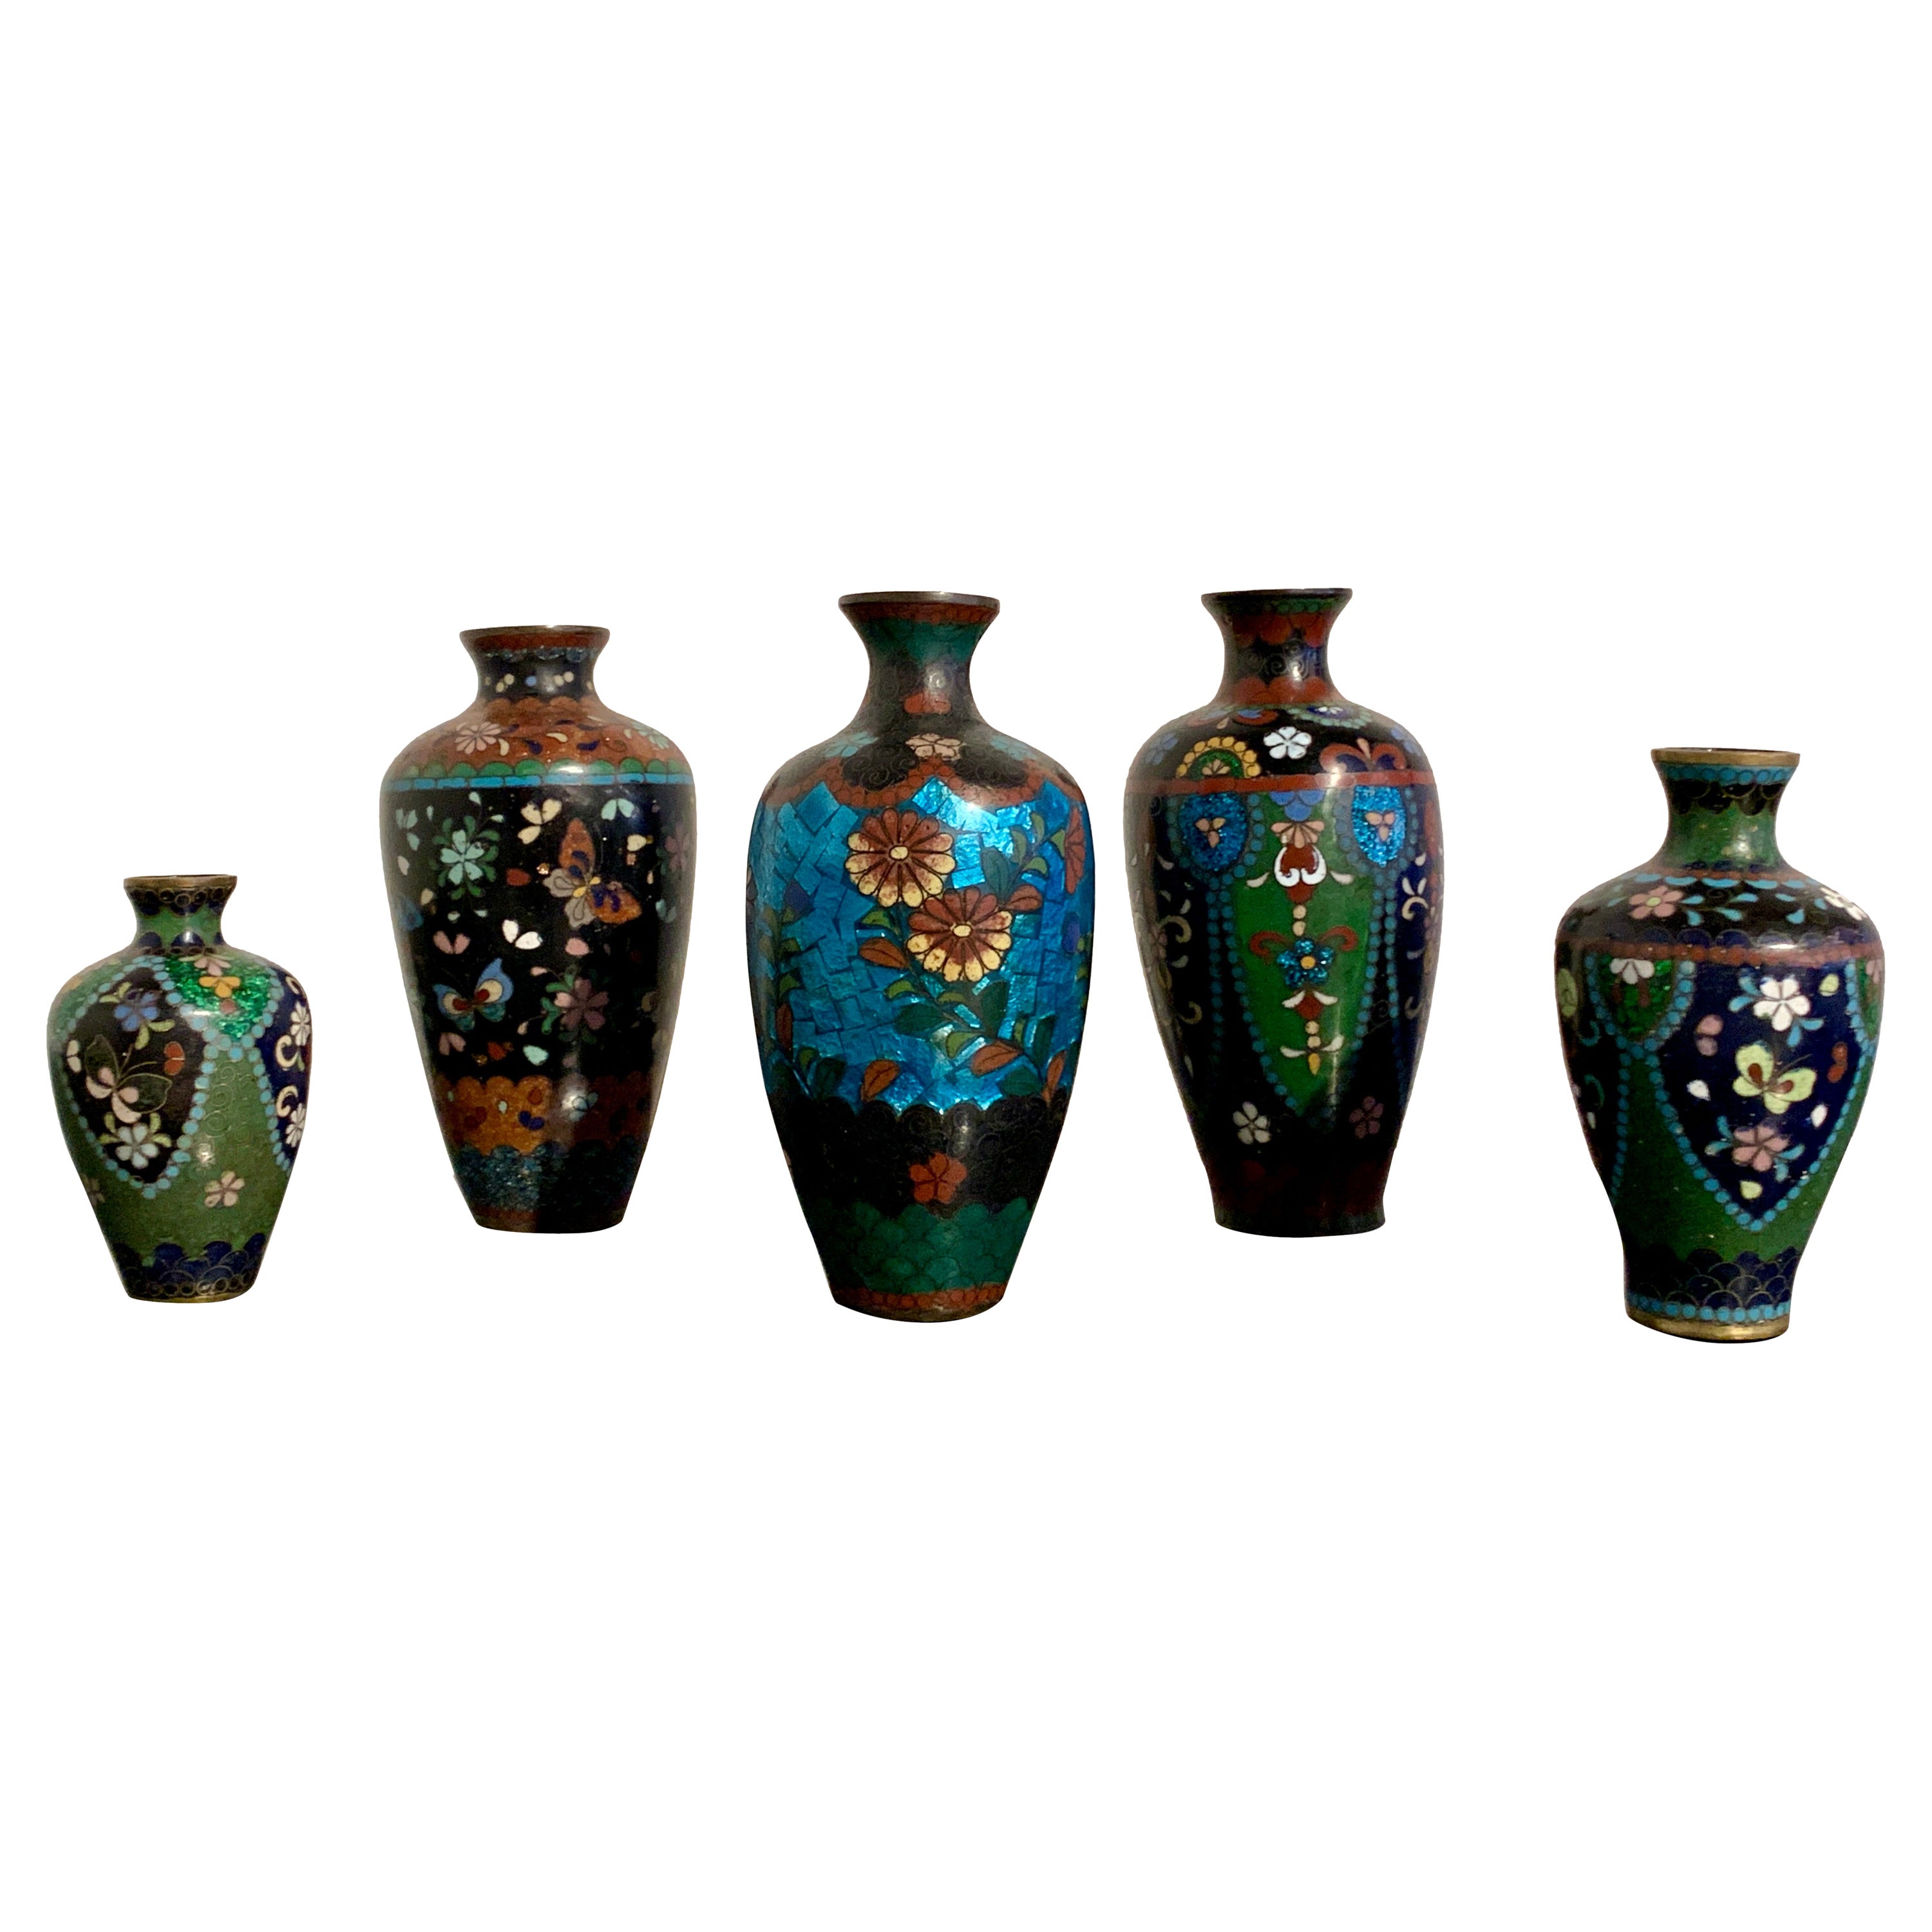 Gruppe von 5 kleinen japanischen Cloisonné- und Ginbari-Vasen, frühes 20. Jahrhundert, Japan